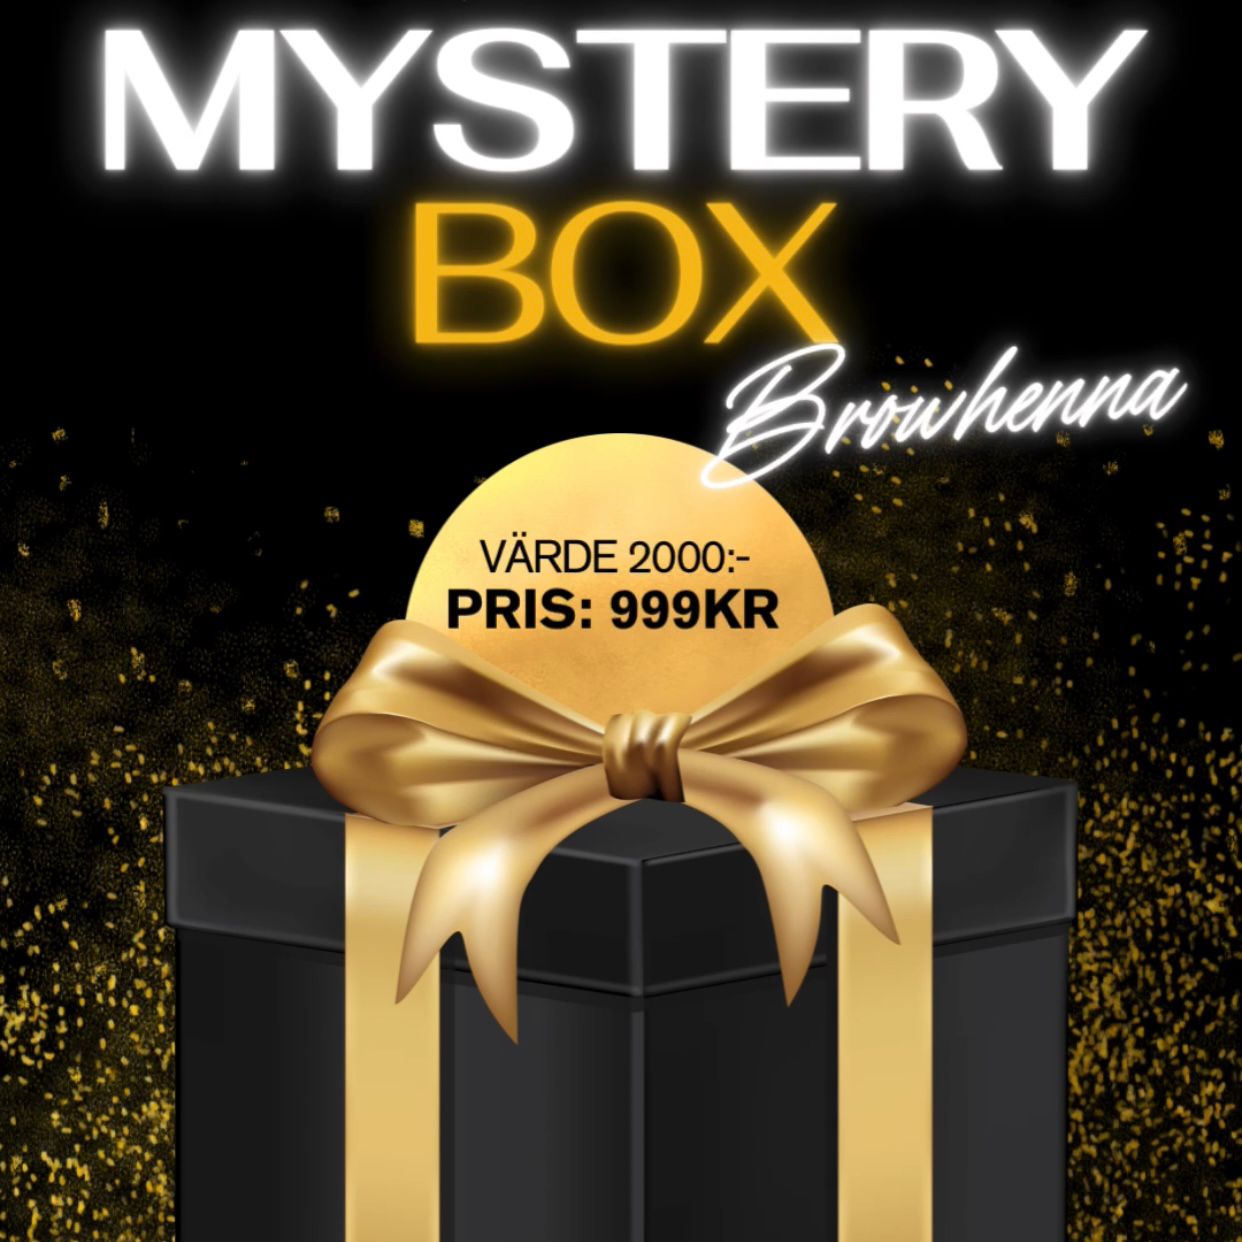 Mystery Box Browhenna - VÄRDE 2000kr